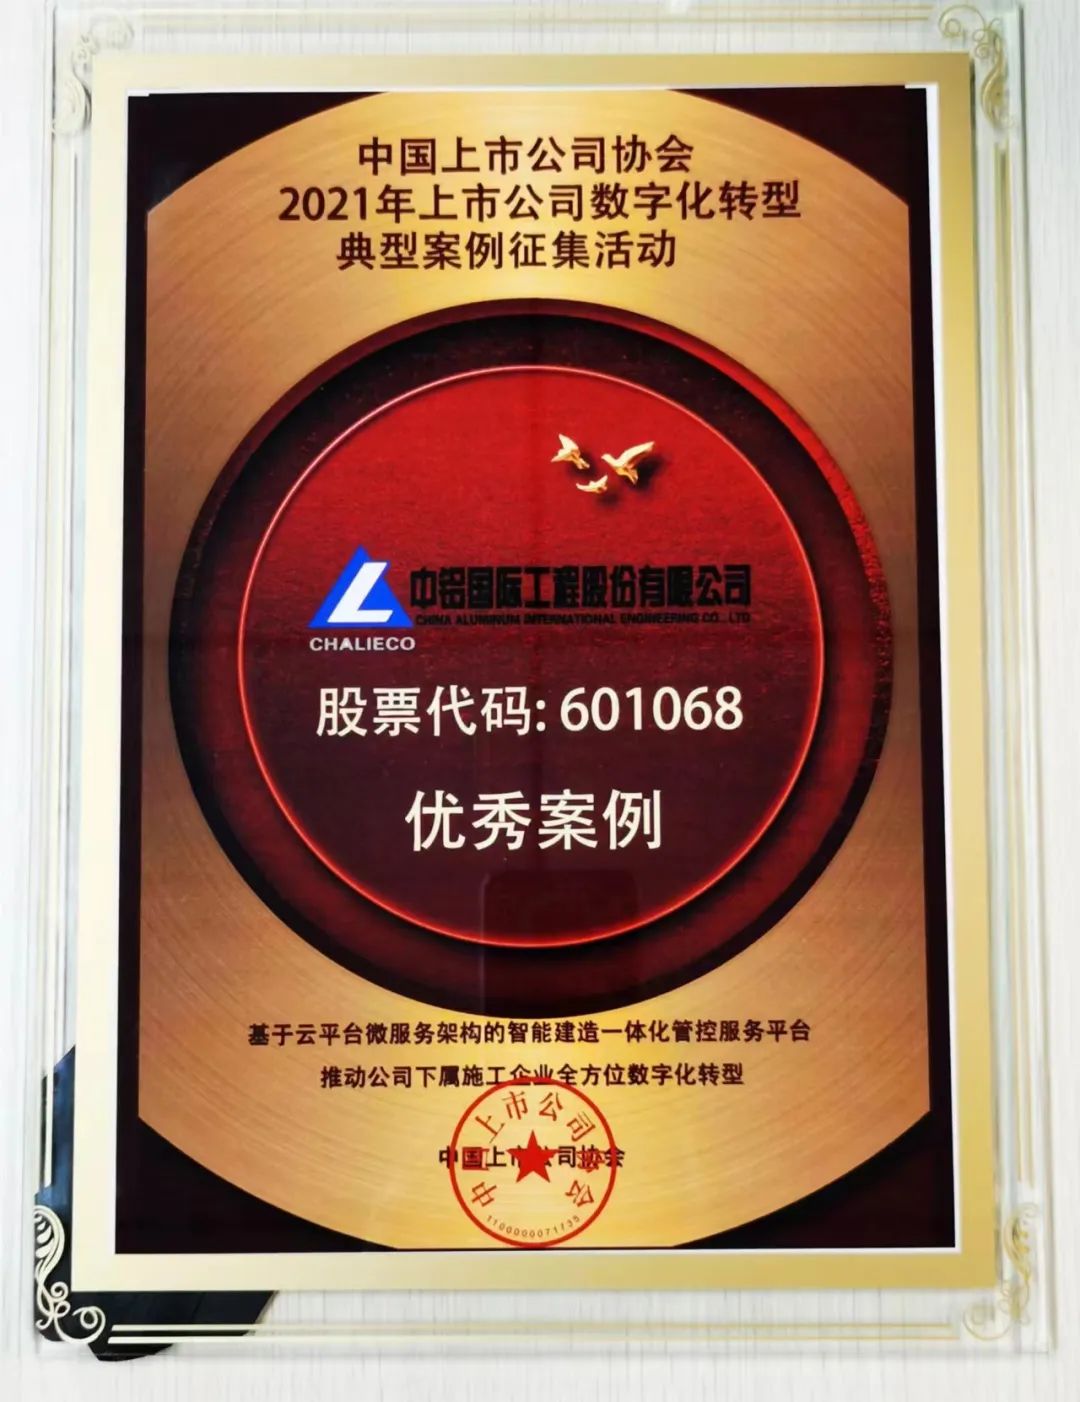 中鋁國際獲評中國上市公司協會數字化轉型“優秀案例”